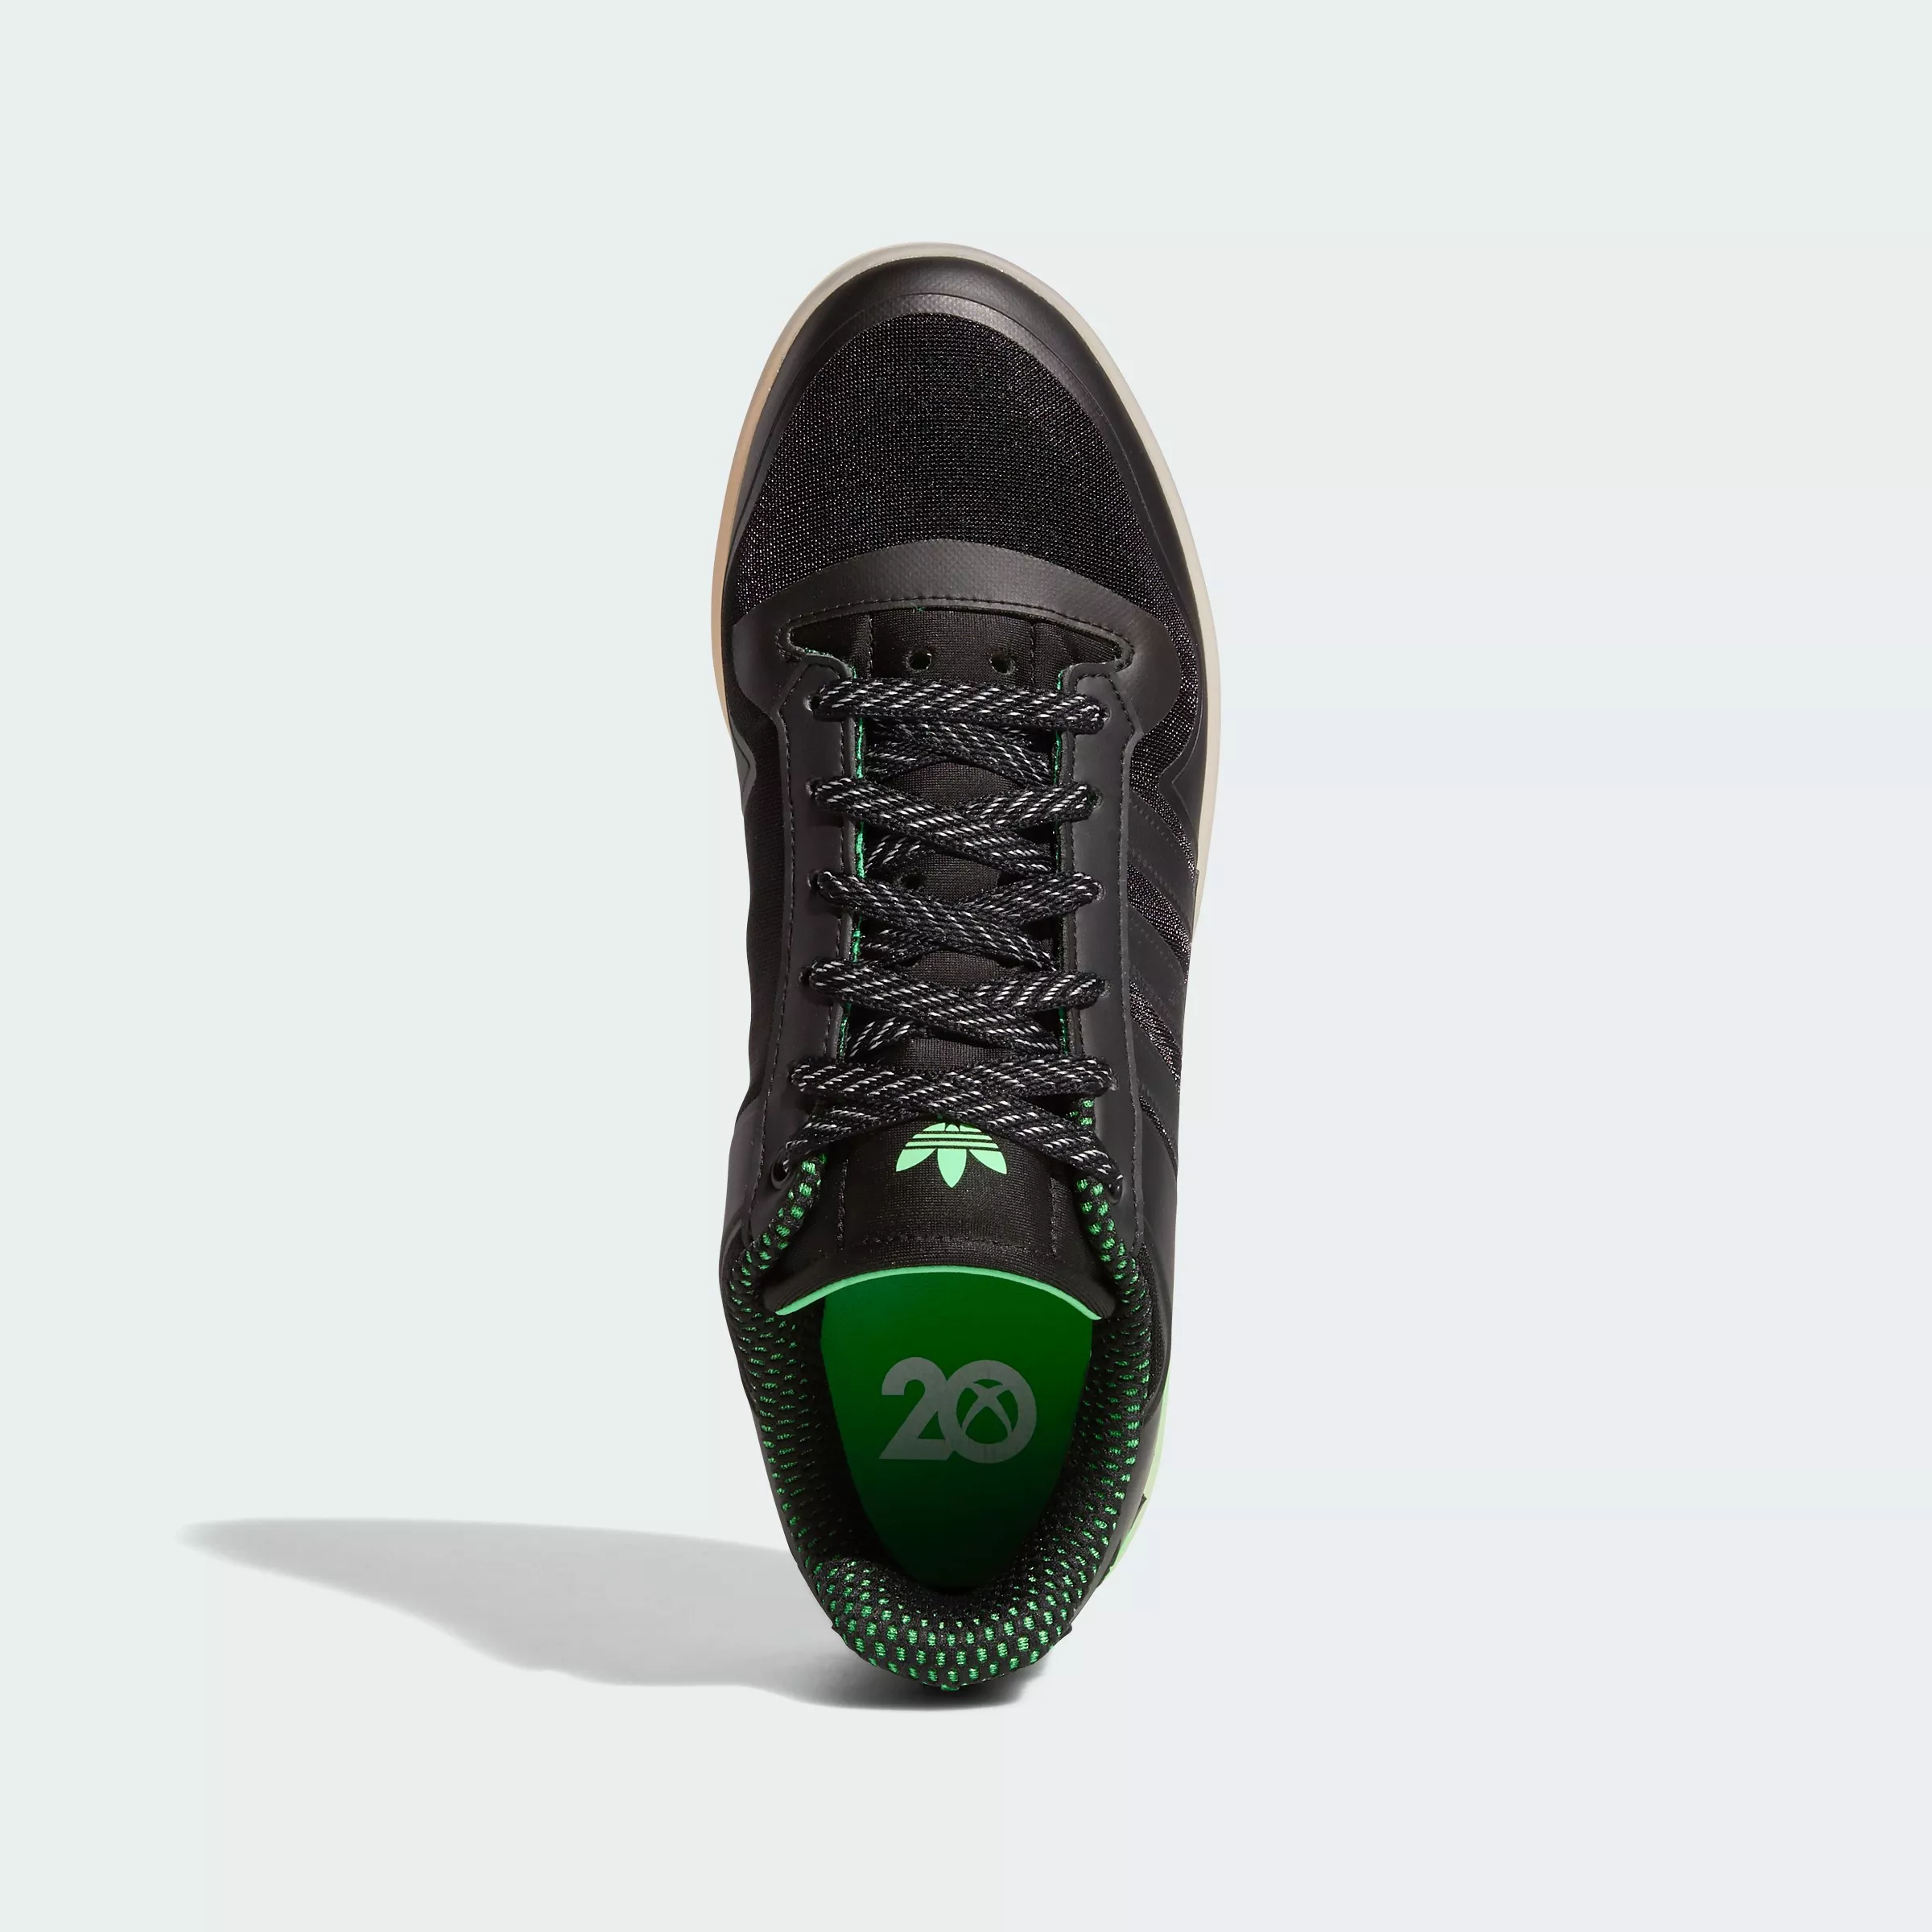 Кроссовки Adidas в стиле Xbox. Купите такие?